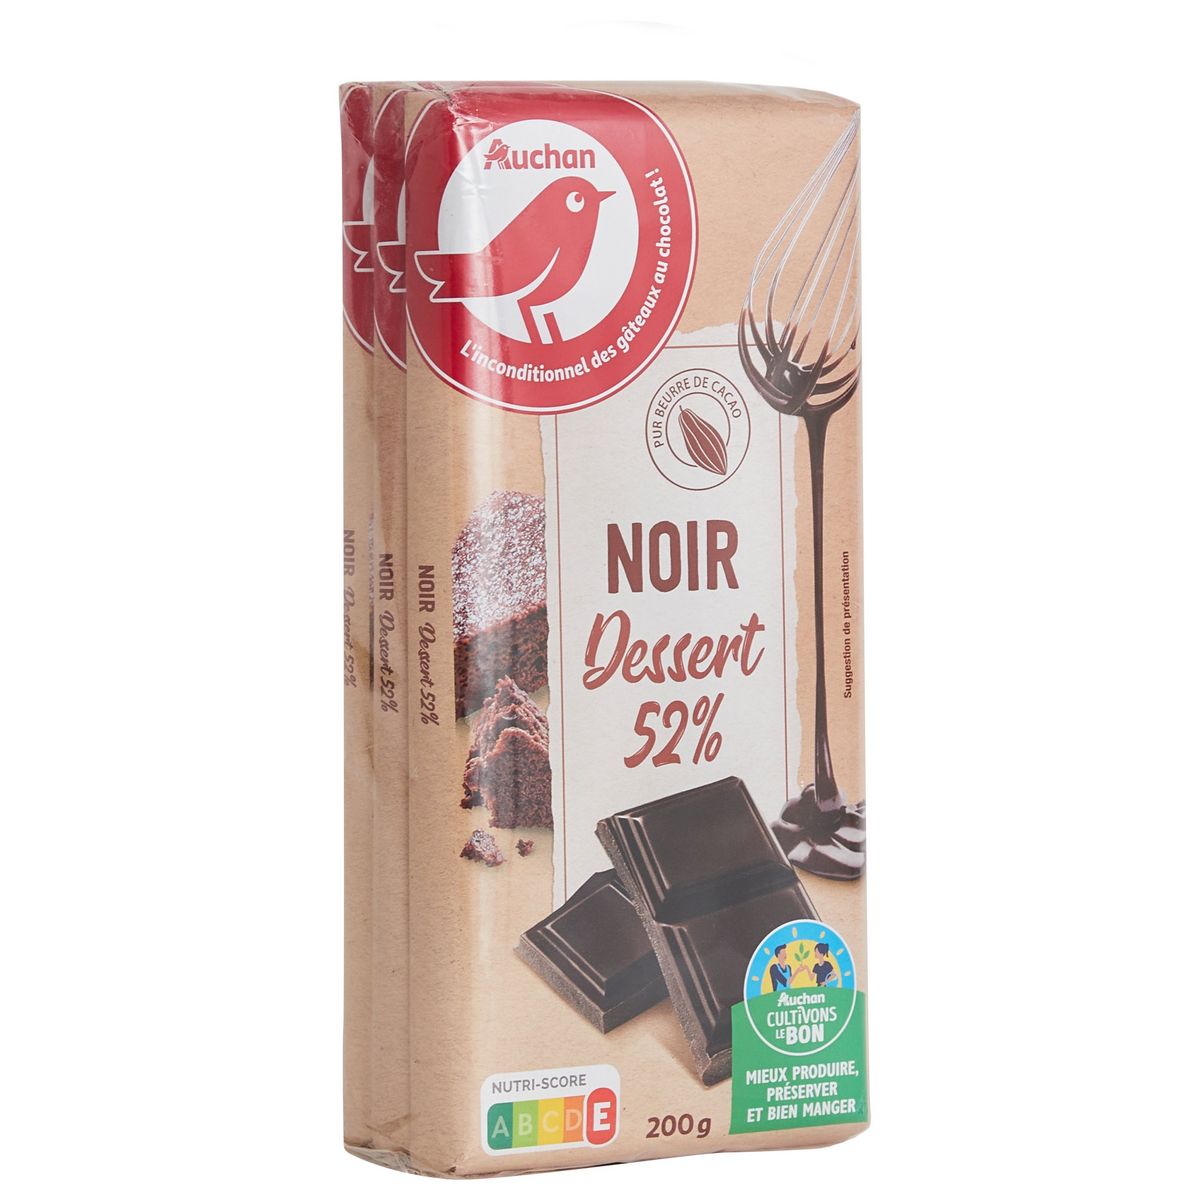 AUCHAN CULTIVONS LE BON Tablette de chocolat noir dessert 52%  3 pièces 3x200g